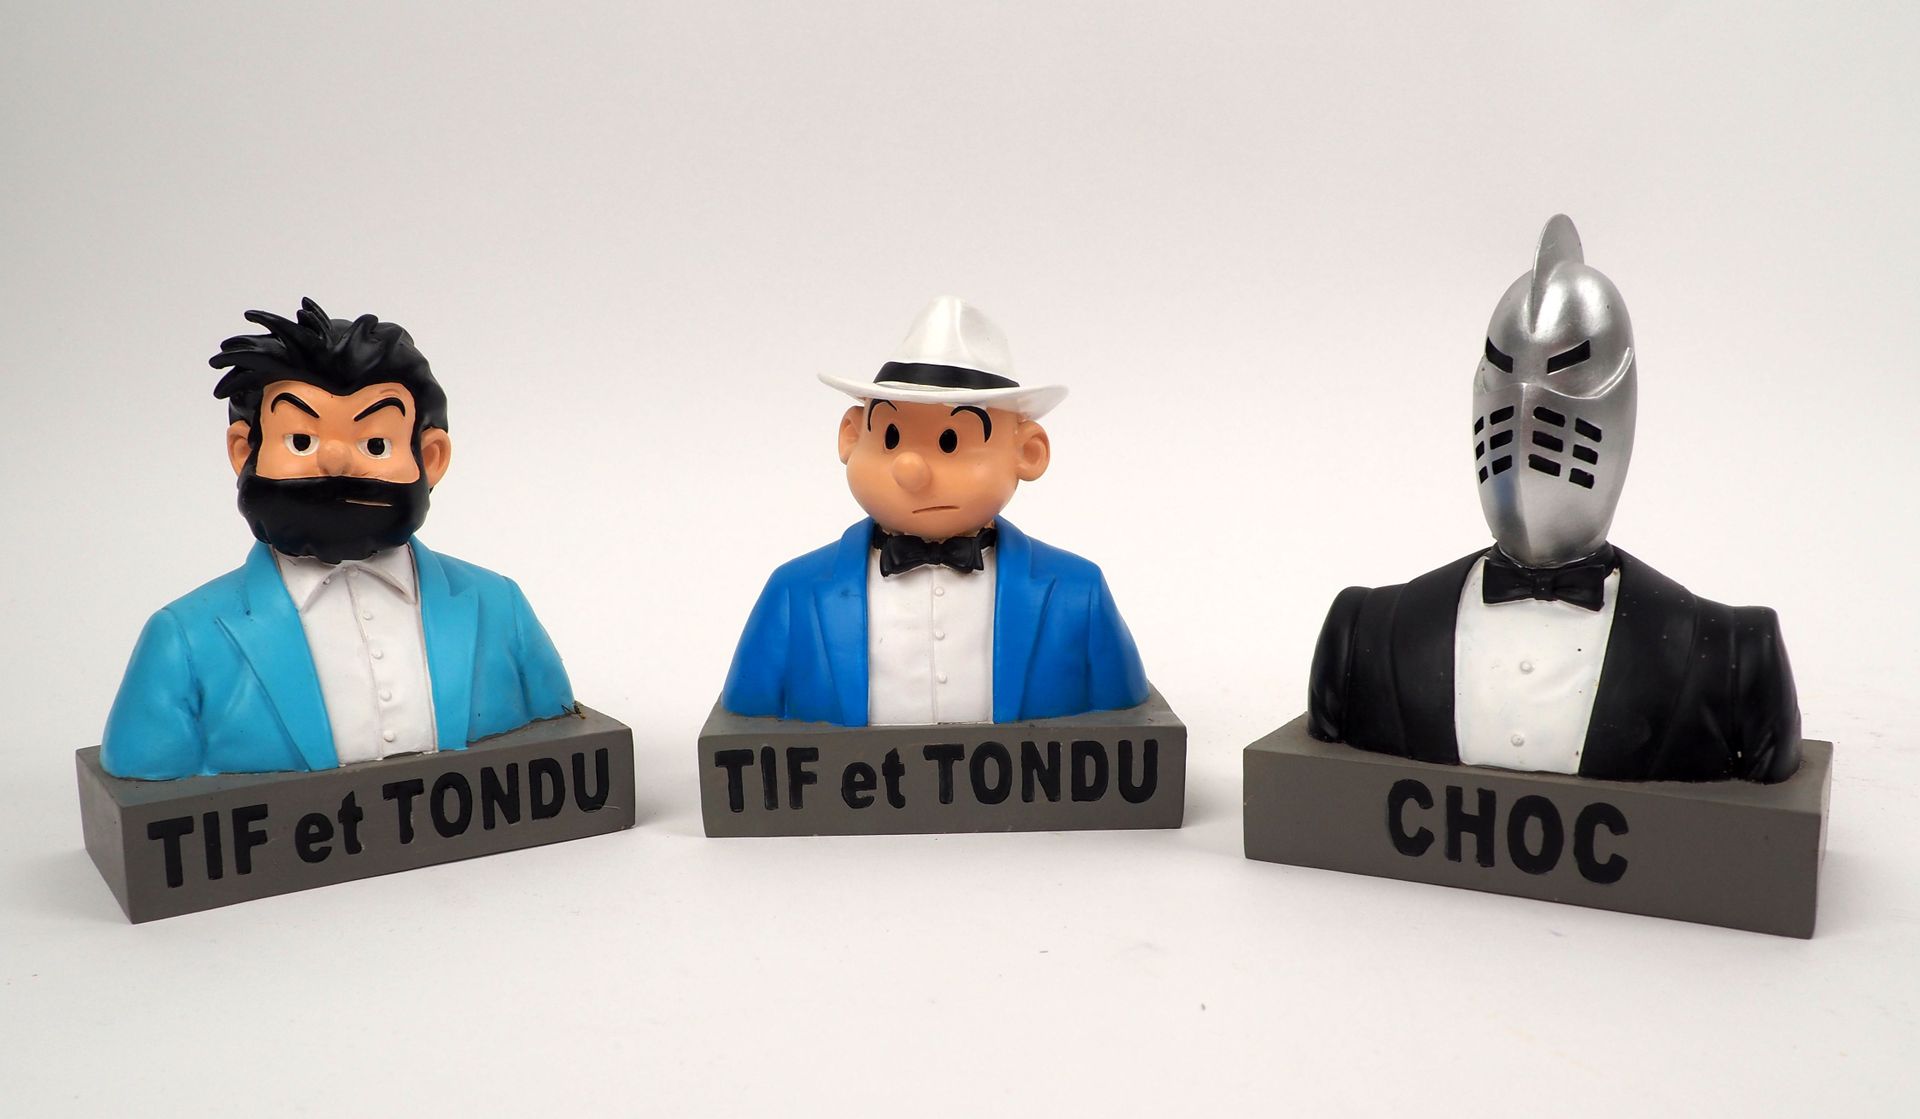 Null WILL
Tif et Tondu
Set mit drei Büstenfiguren, die mit Dupuis 2014 gekennzei&hellip;